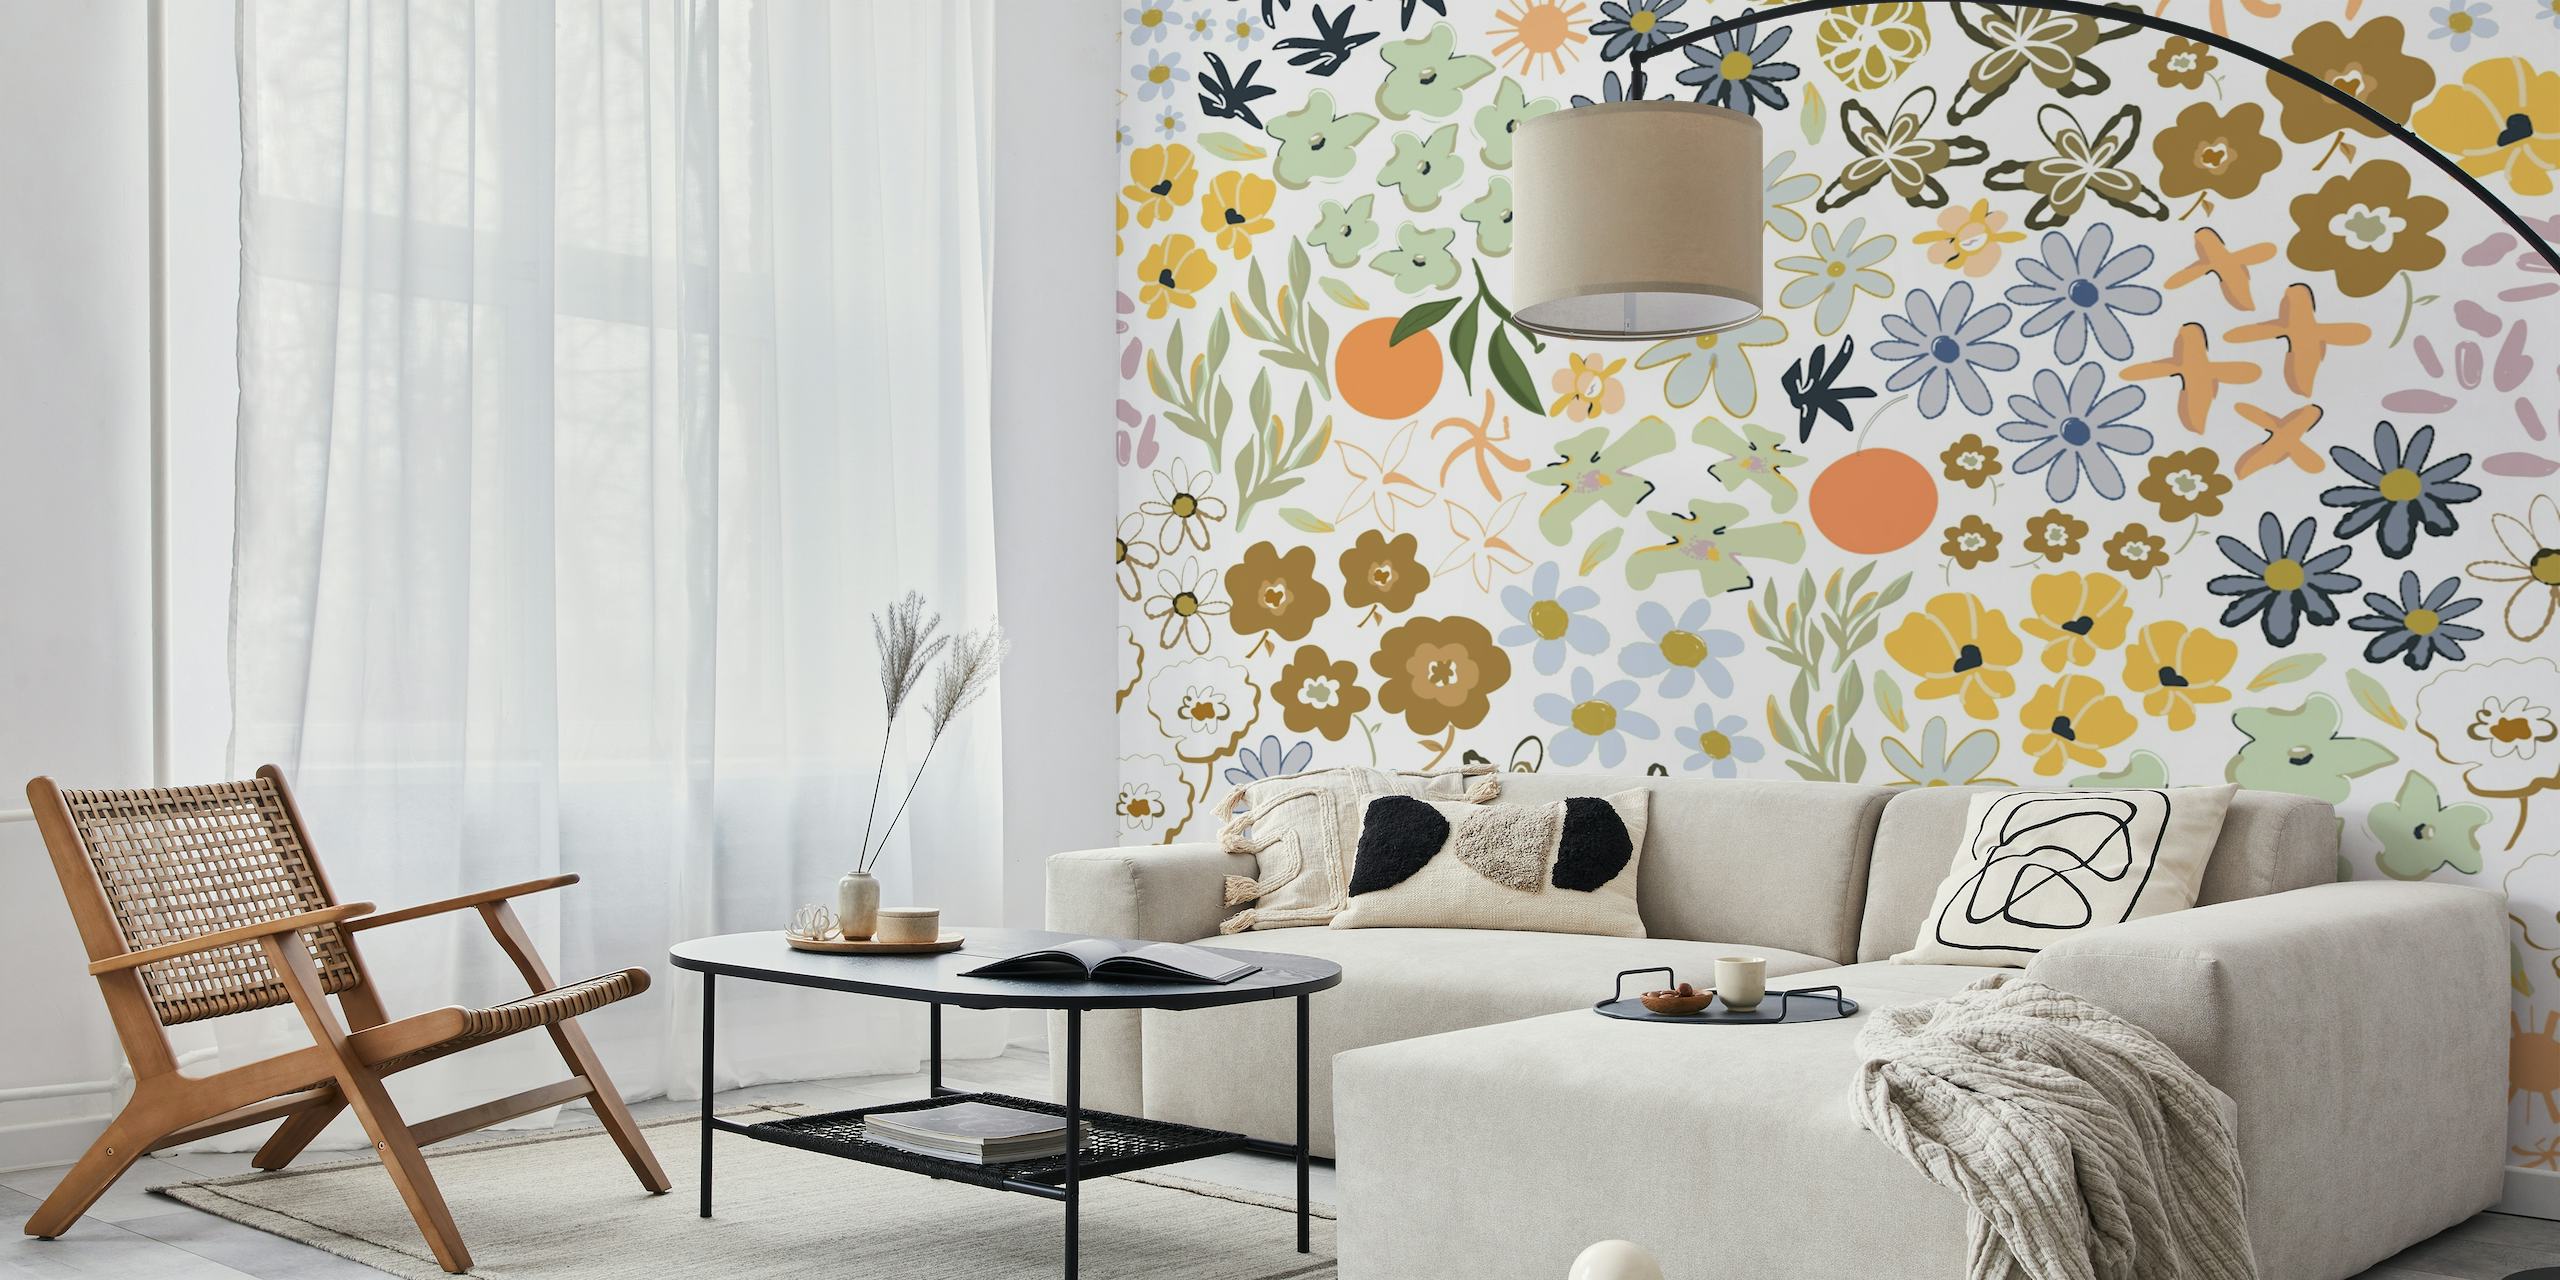 Fotomural vinílico de parede colorido com padrão floral com flores, insetos e frutas